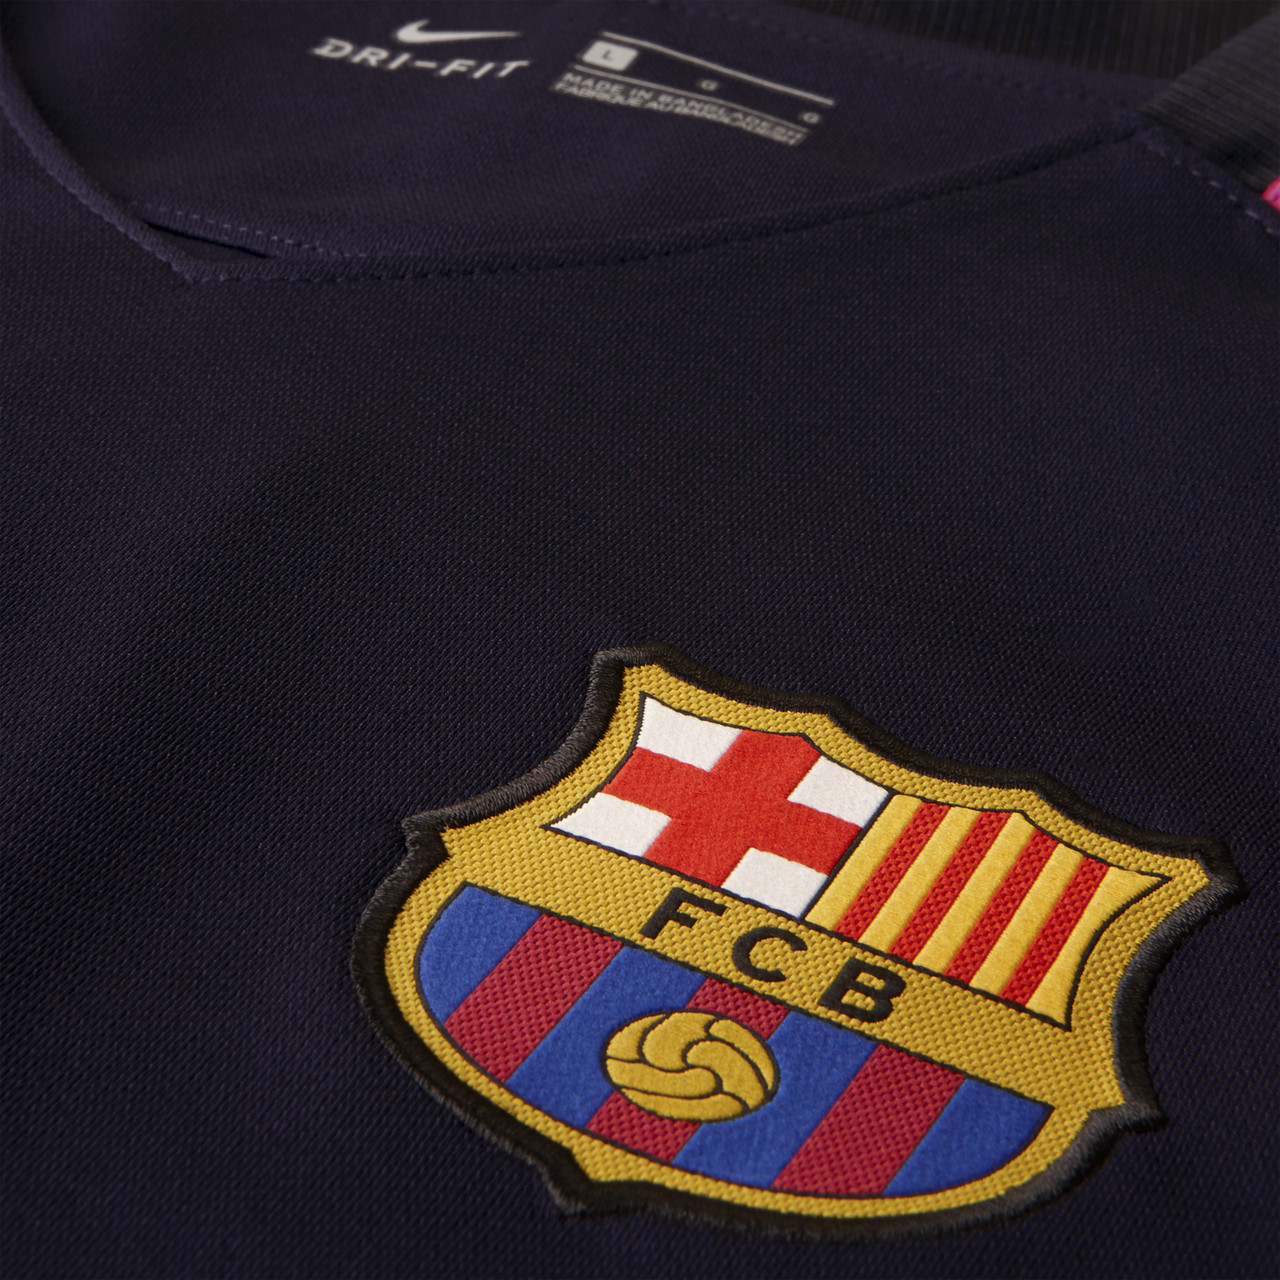 Barcelona 16/17 Nike Away Kit | 16/17 Kits | Football shirt blog